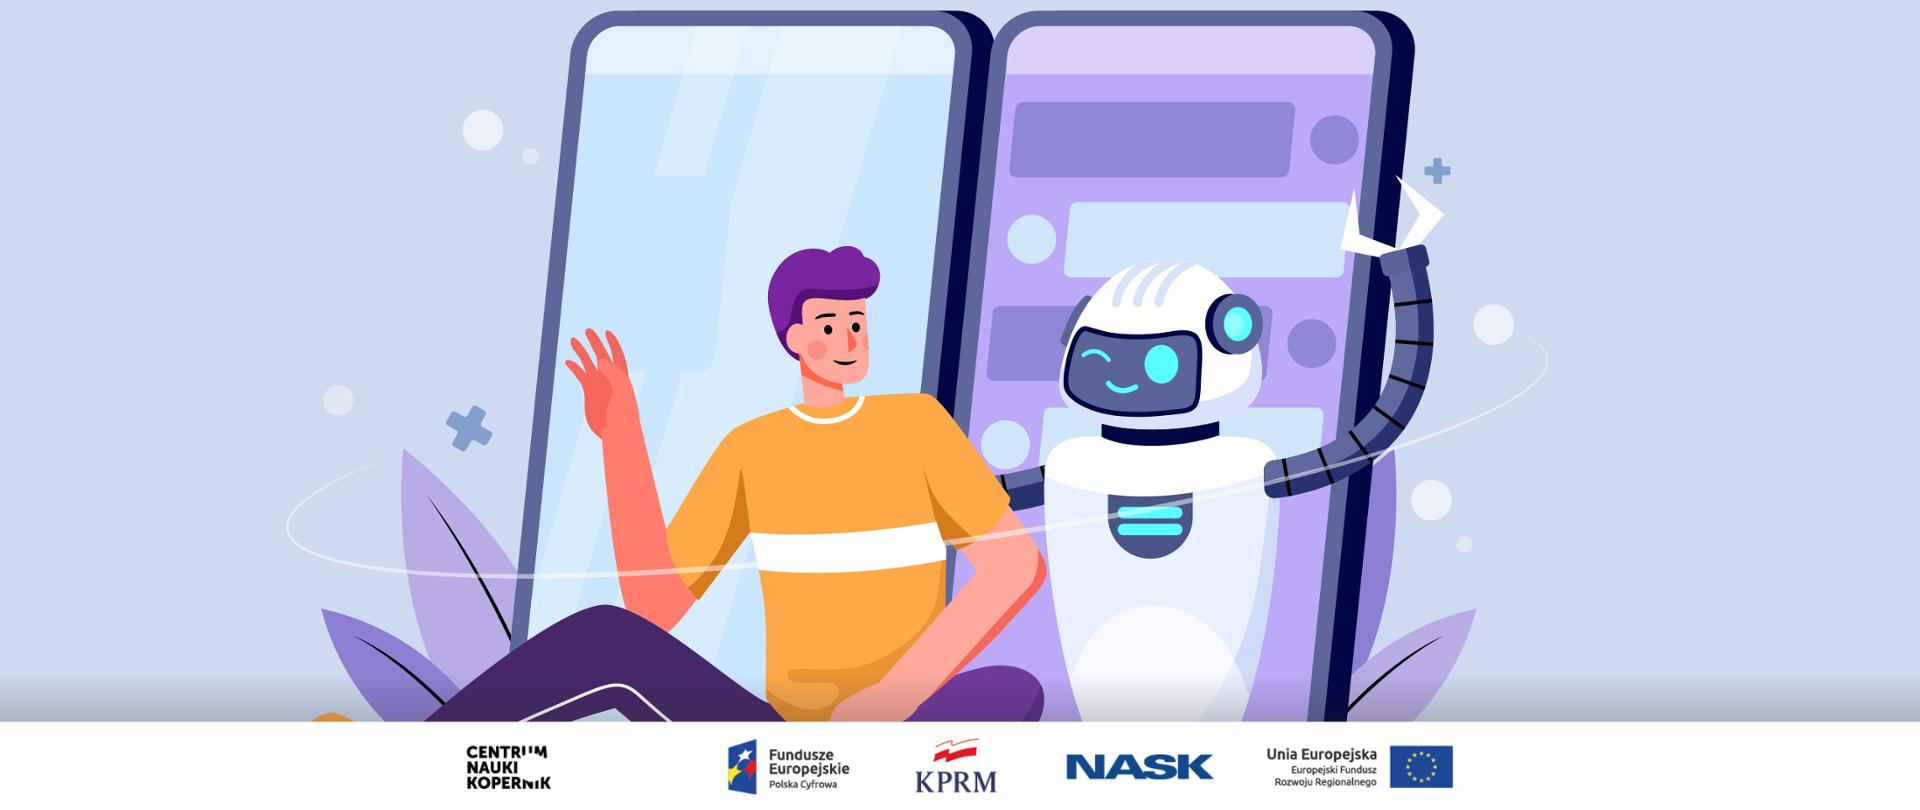 Grafika wektorowa utrzymana w błękitno-fioletowych kolorach. Mężczyzna siedzący obok robota, za nimi smartfony.